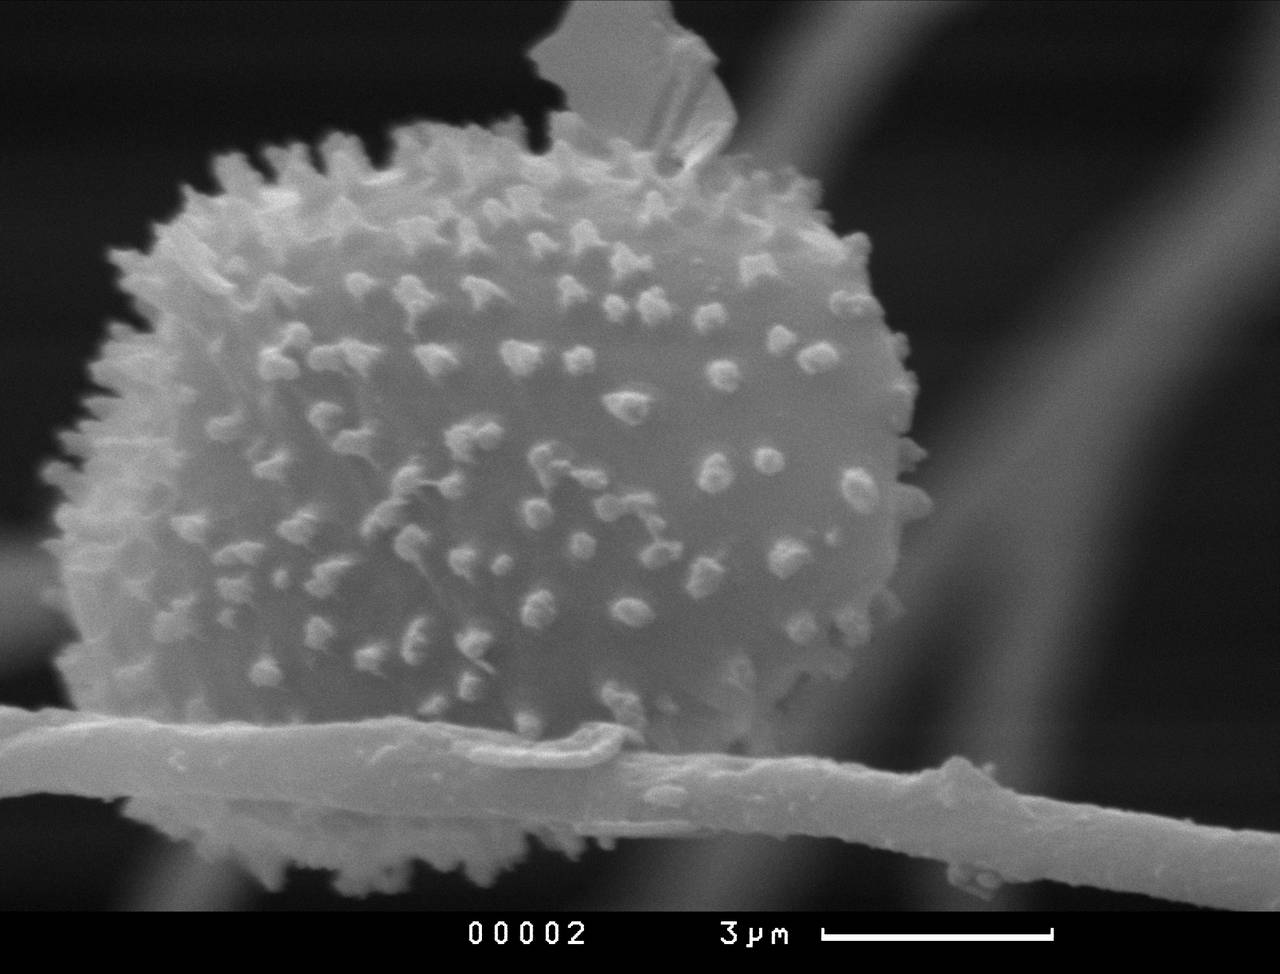 Lamprderma gulielmae внешний вид спорангия. Хорошо заметны углубления на поверхности перидия, СЭМ, Нелидовский, Тверская область (Россия)